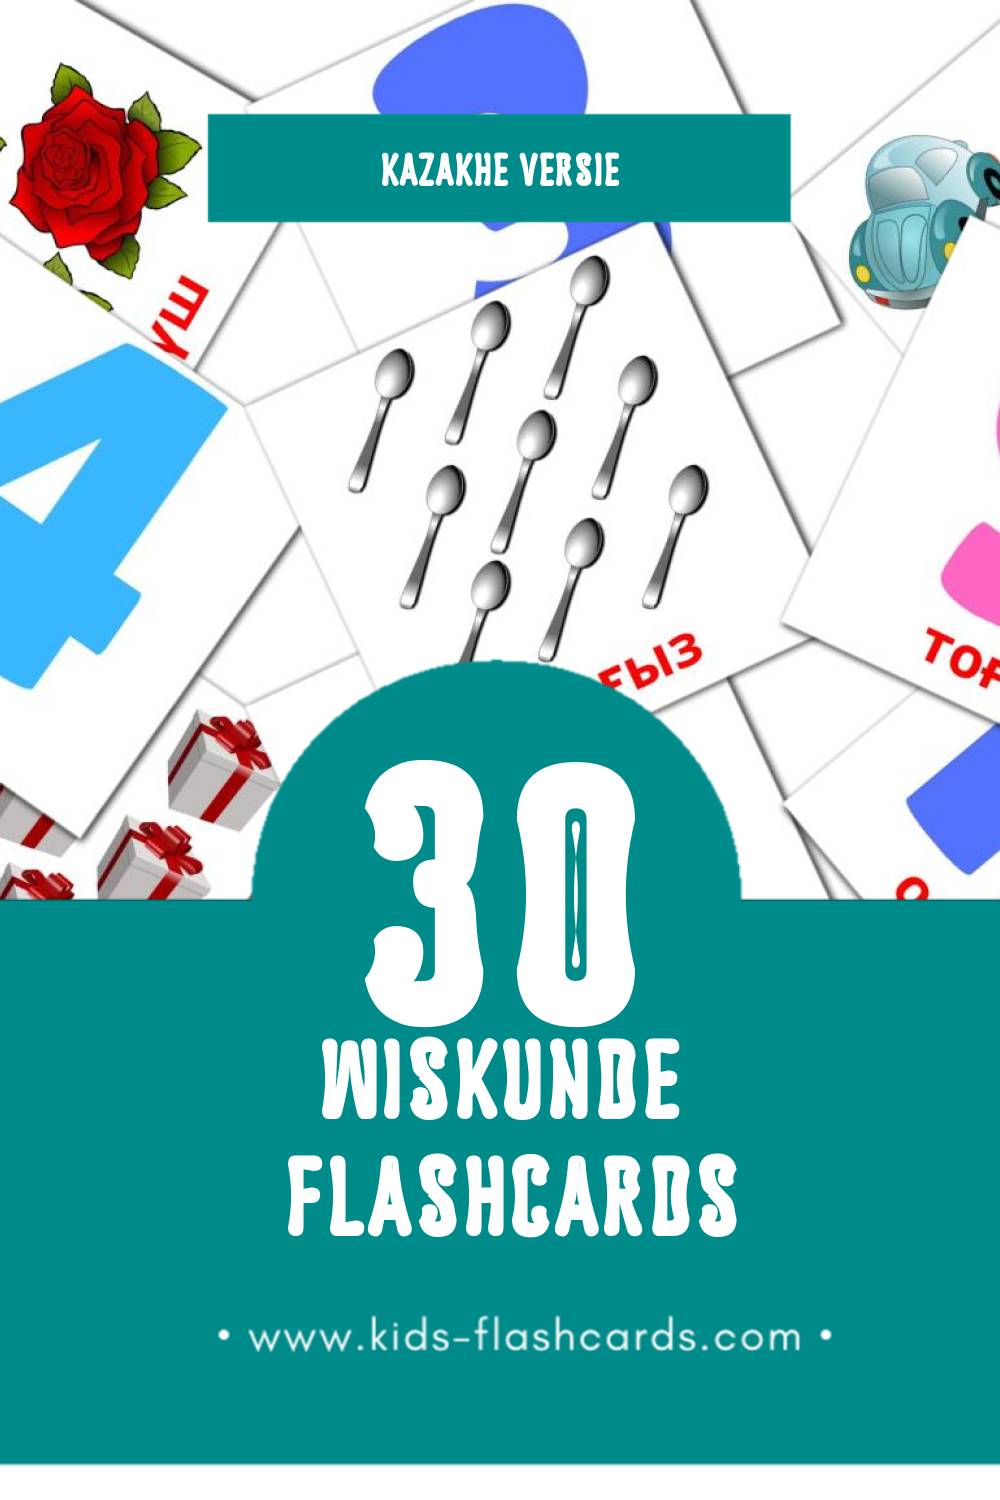 Visuele Математика Flashcards voor Kleuters (30 kaarten in het Kazakh)